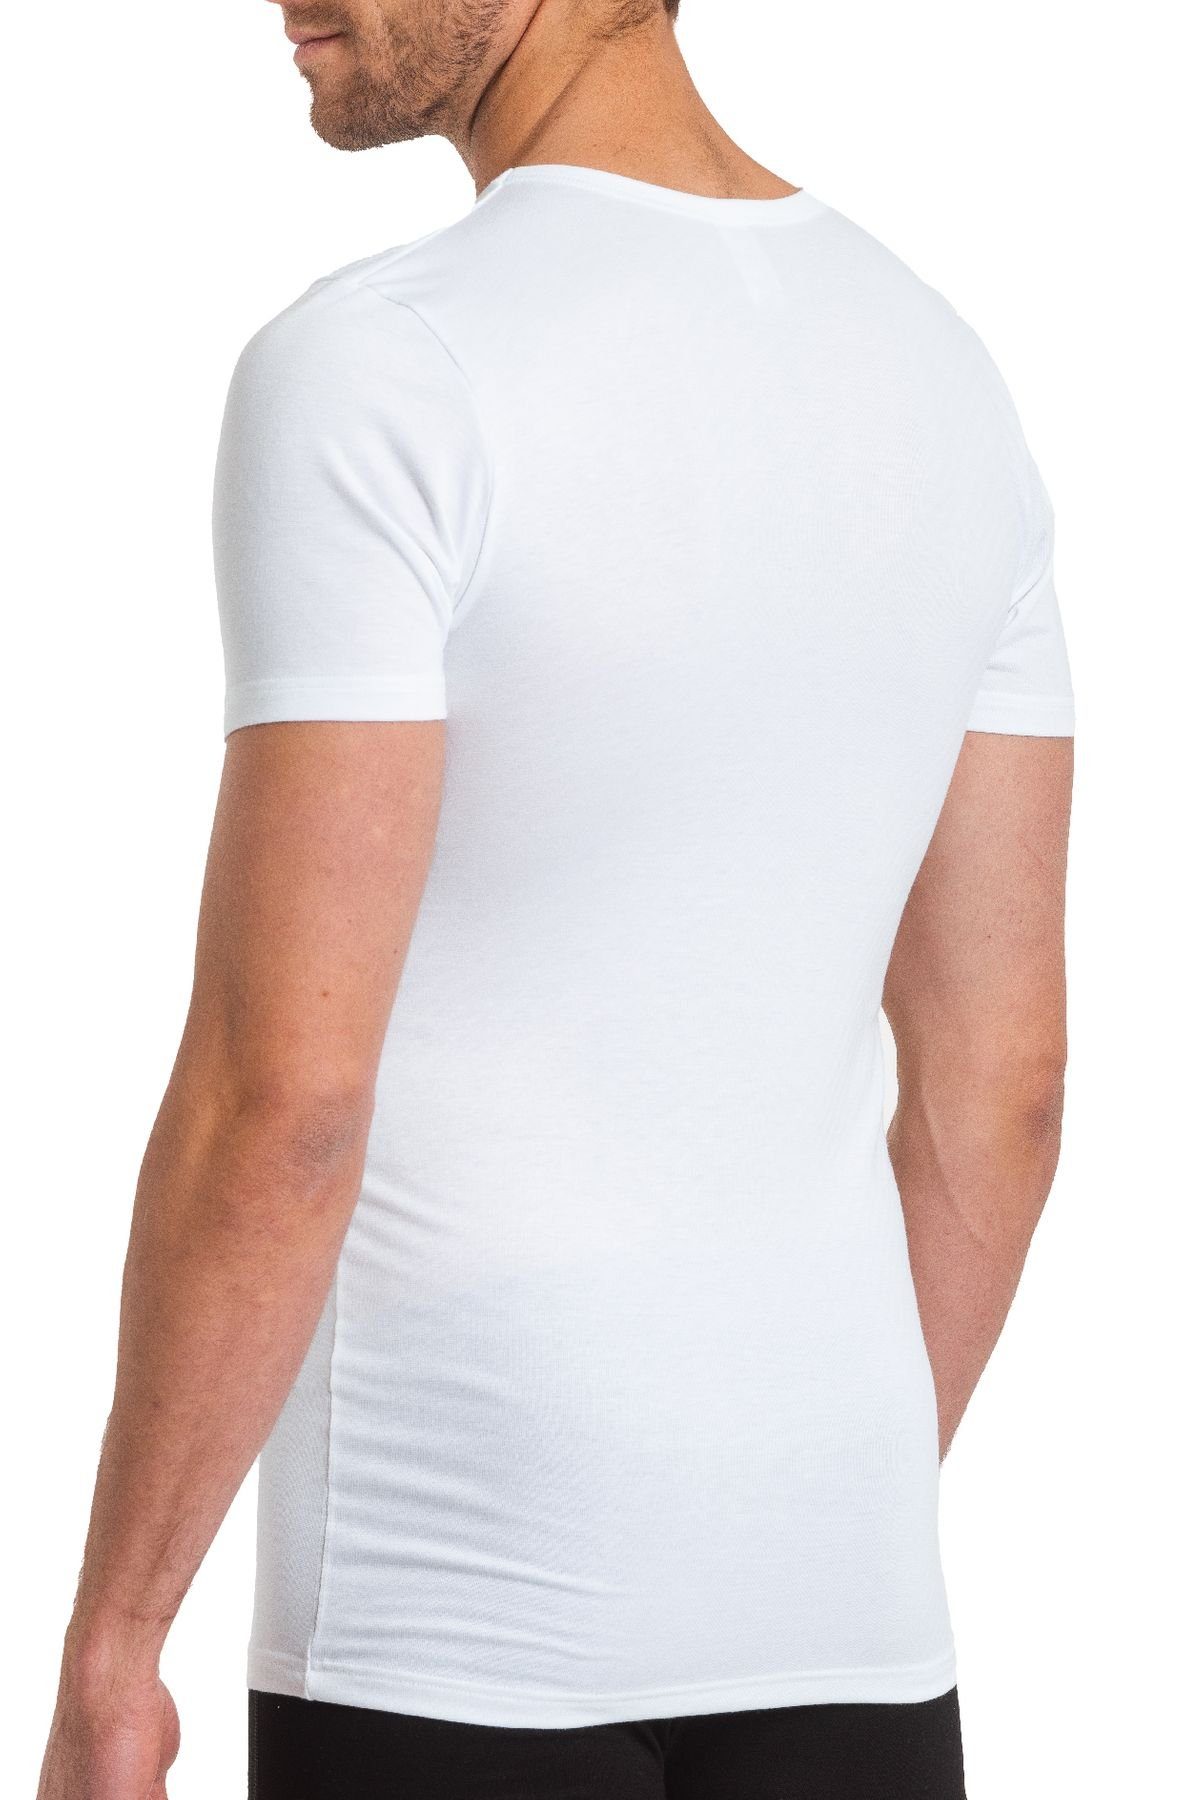 (1-St) HAASIS 77130051-weiss Shirt formbeständig, pflegeleicht, strapazierfähig Bodywear 1919 Optimale Passform, Unterziehshirt Herren